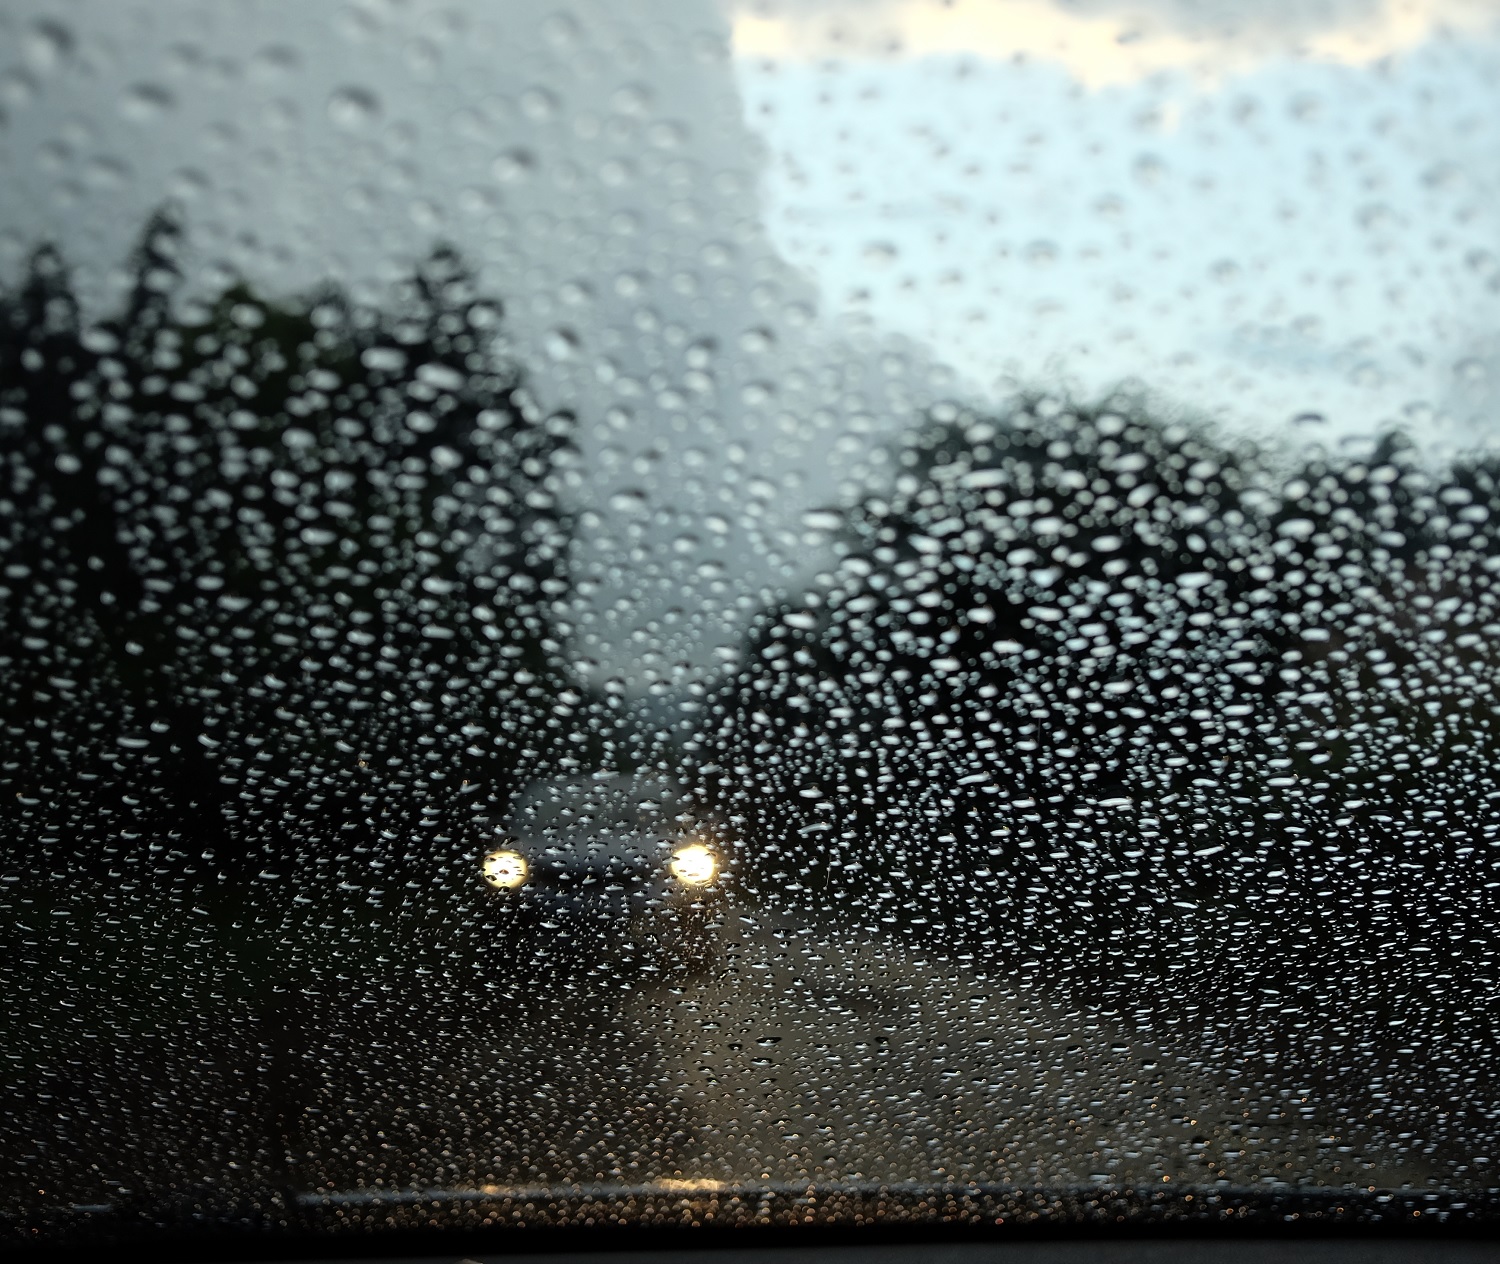 Rain on a car windshield